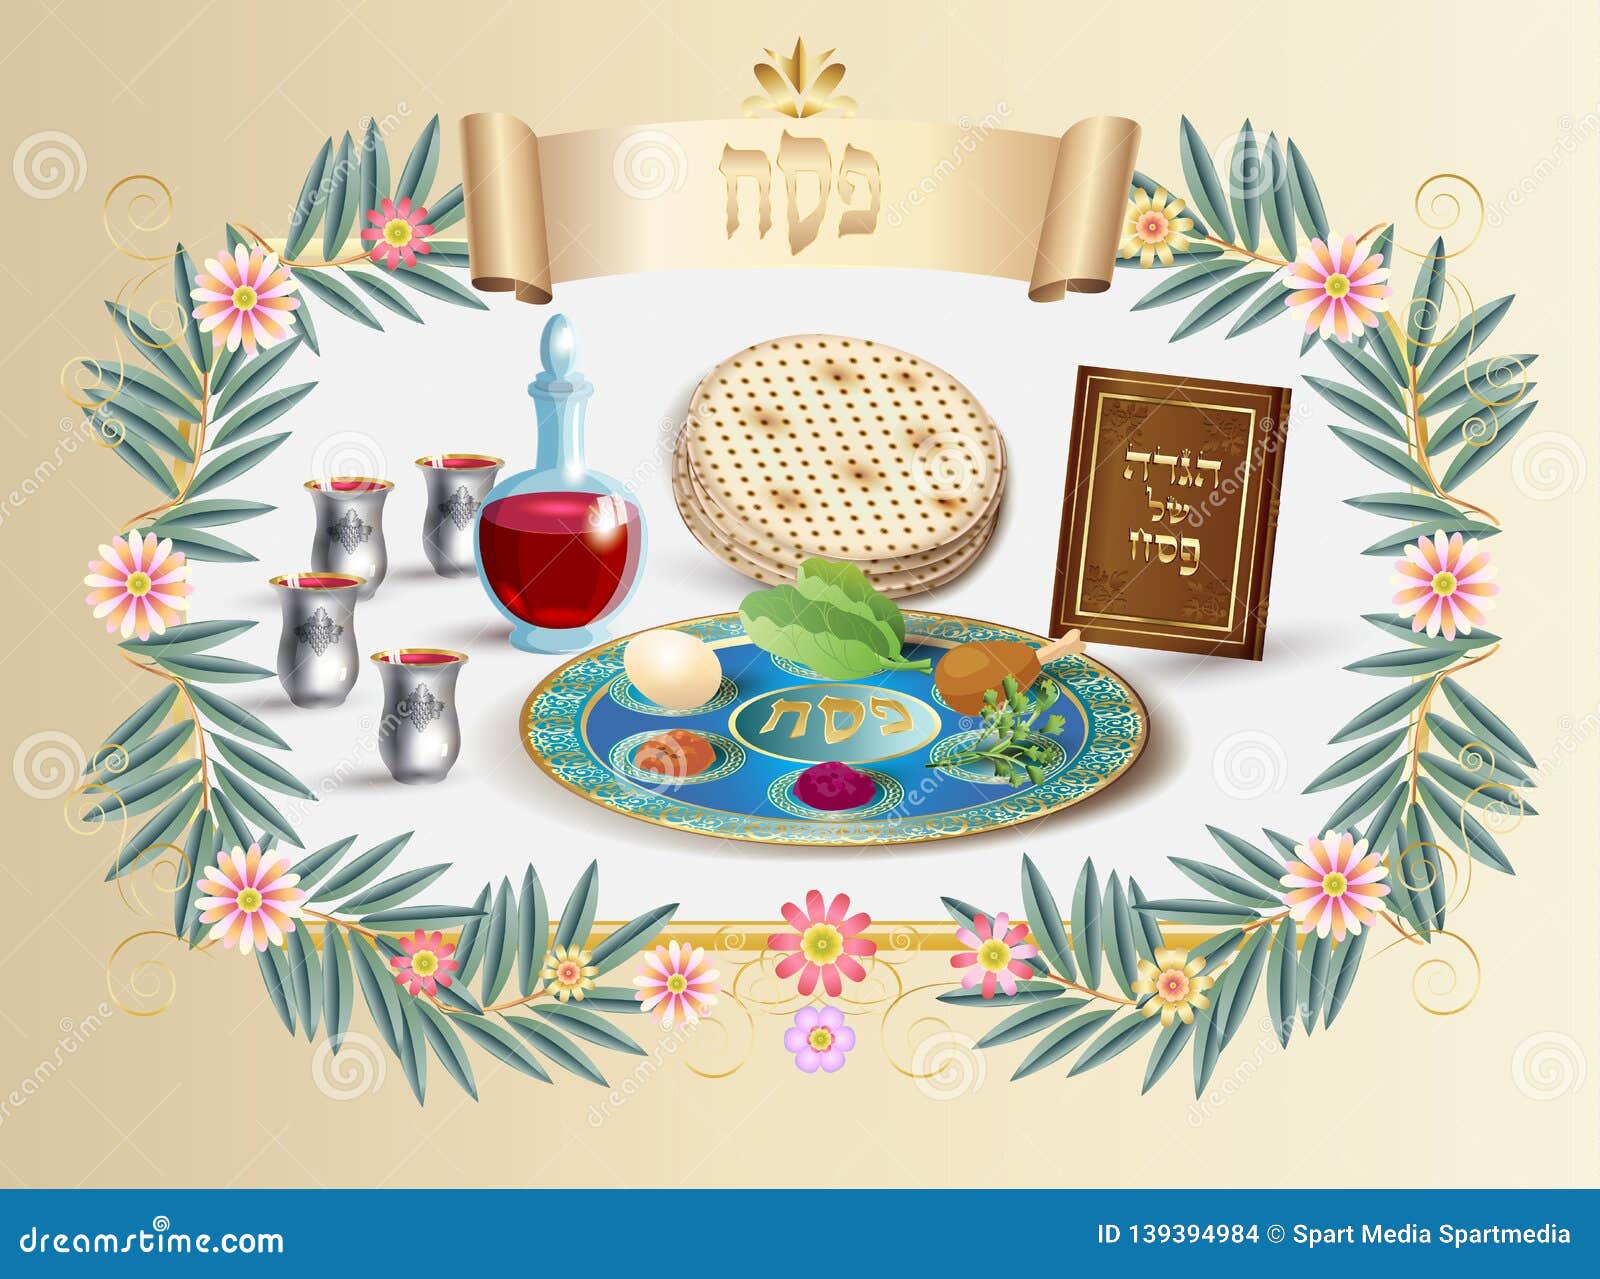 Jewish Passover Matzoh Note Card 